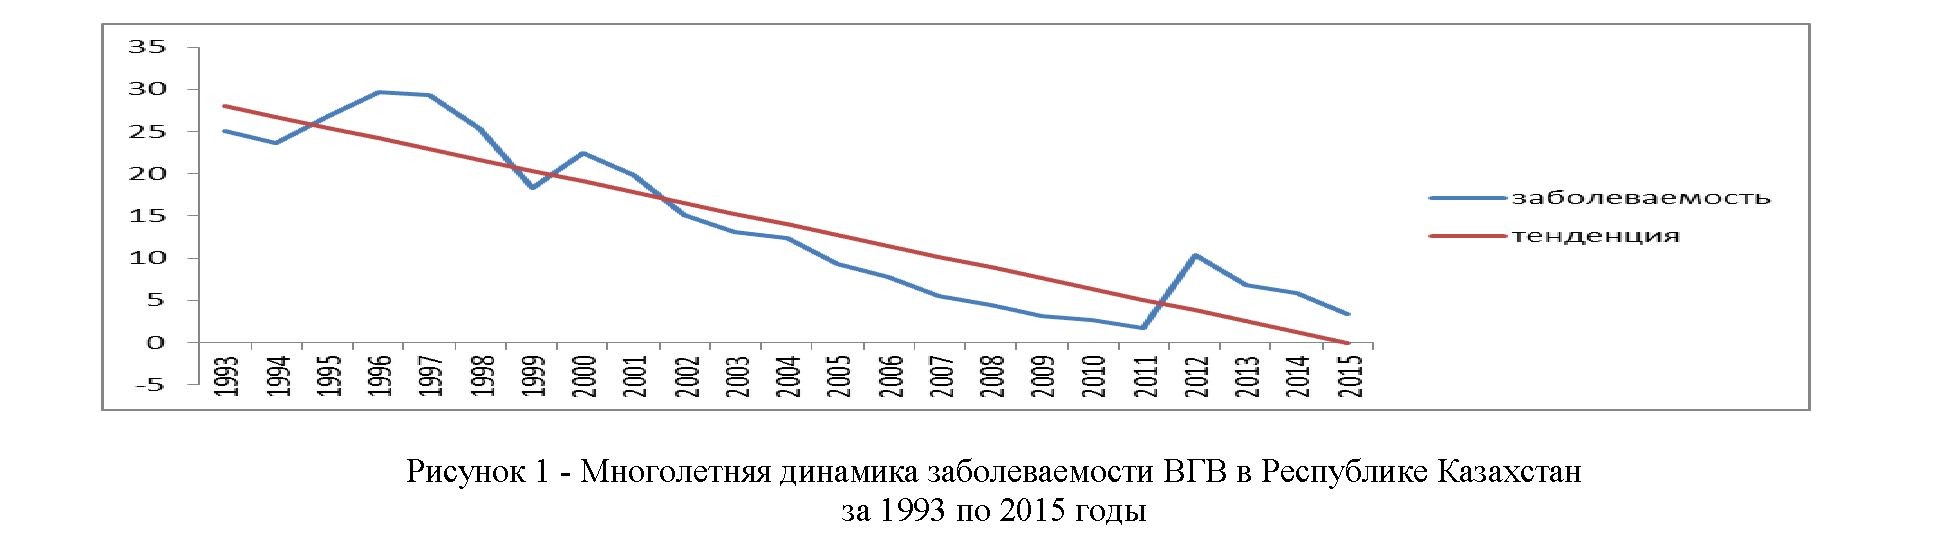 Прогнозирование уровня заболеваемости ВГВ в республике Казахстан